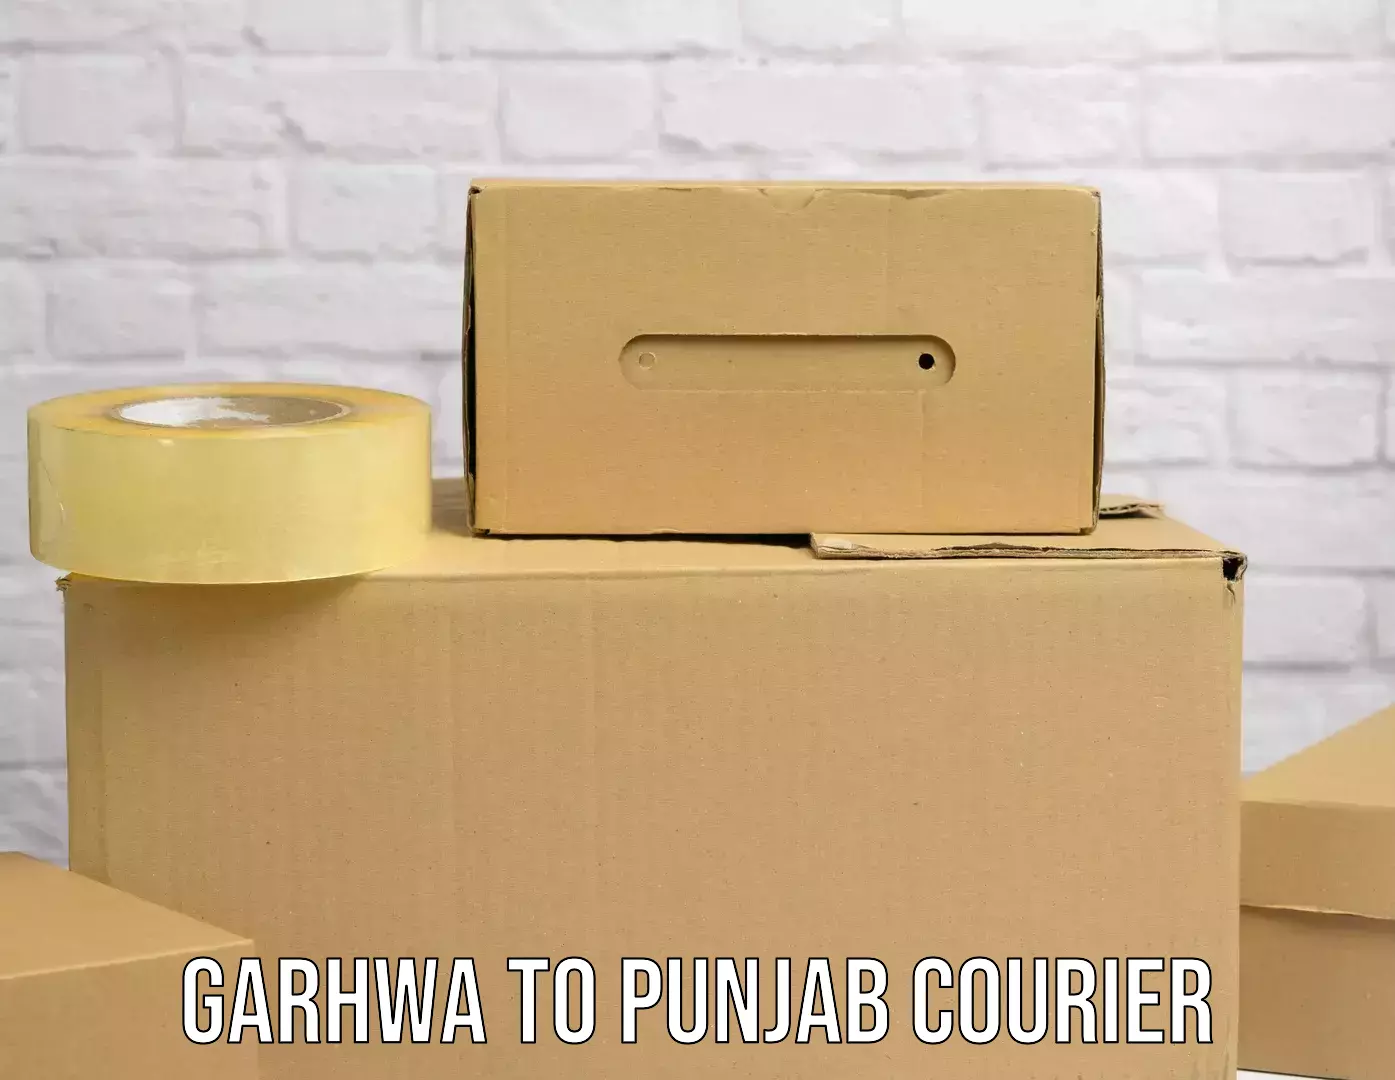 Express mail solutions Garhwa to Punjab